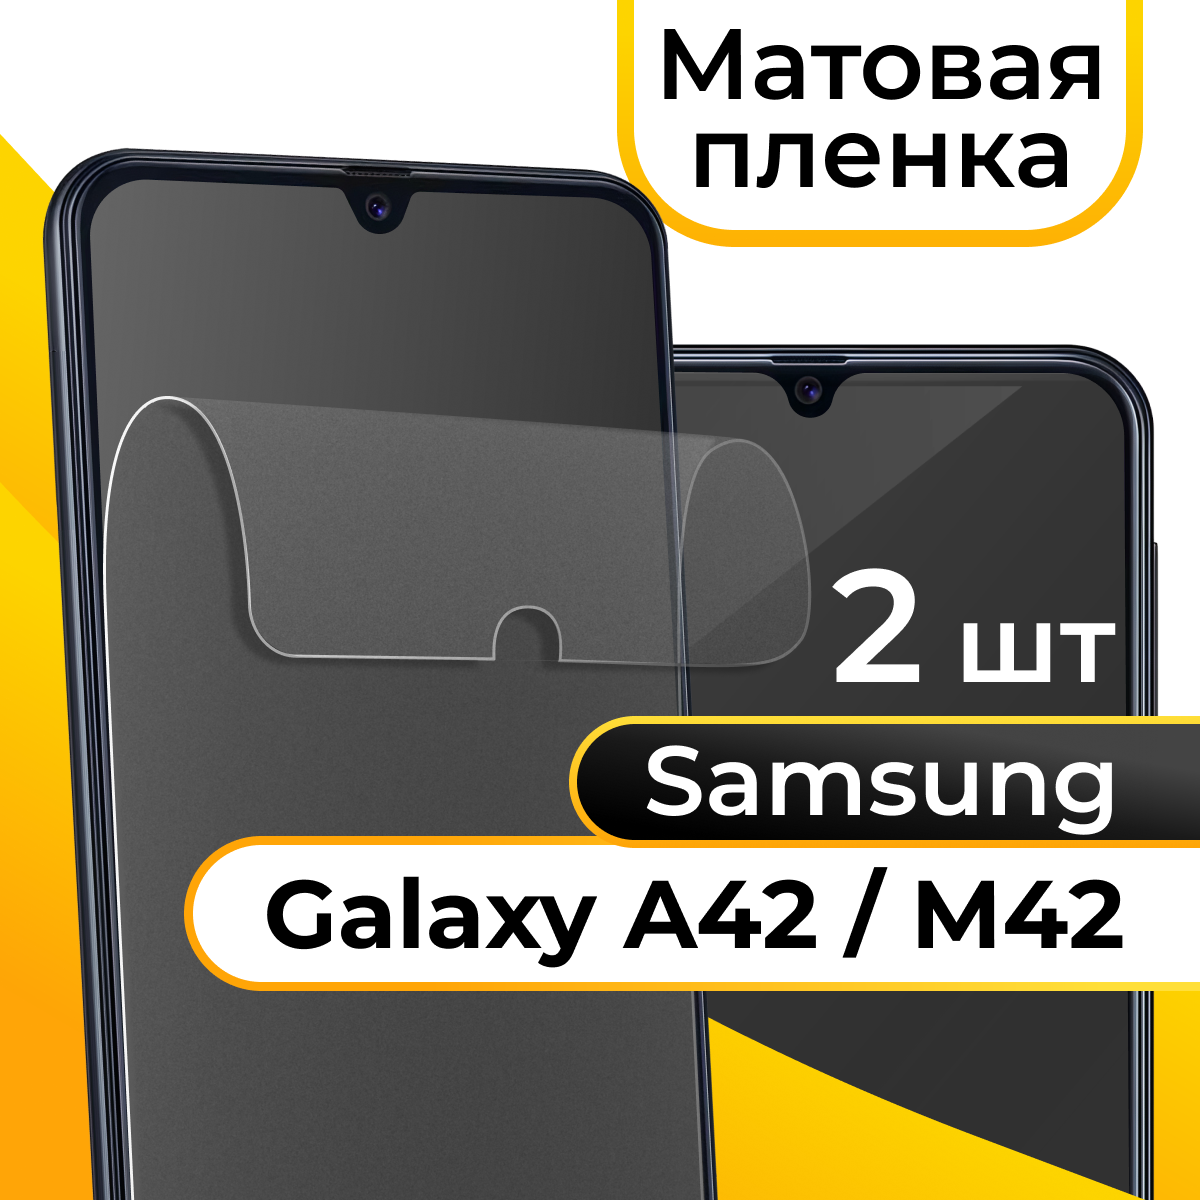 Комплект 2 шт. Матовая пленка для смартфона Samsung Galaxy A42 и M42 / Защитная противоударная пленка на телефон Самсунг Галакси А42 и М42 / Гидрогелевая пленка